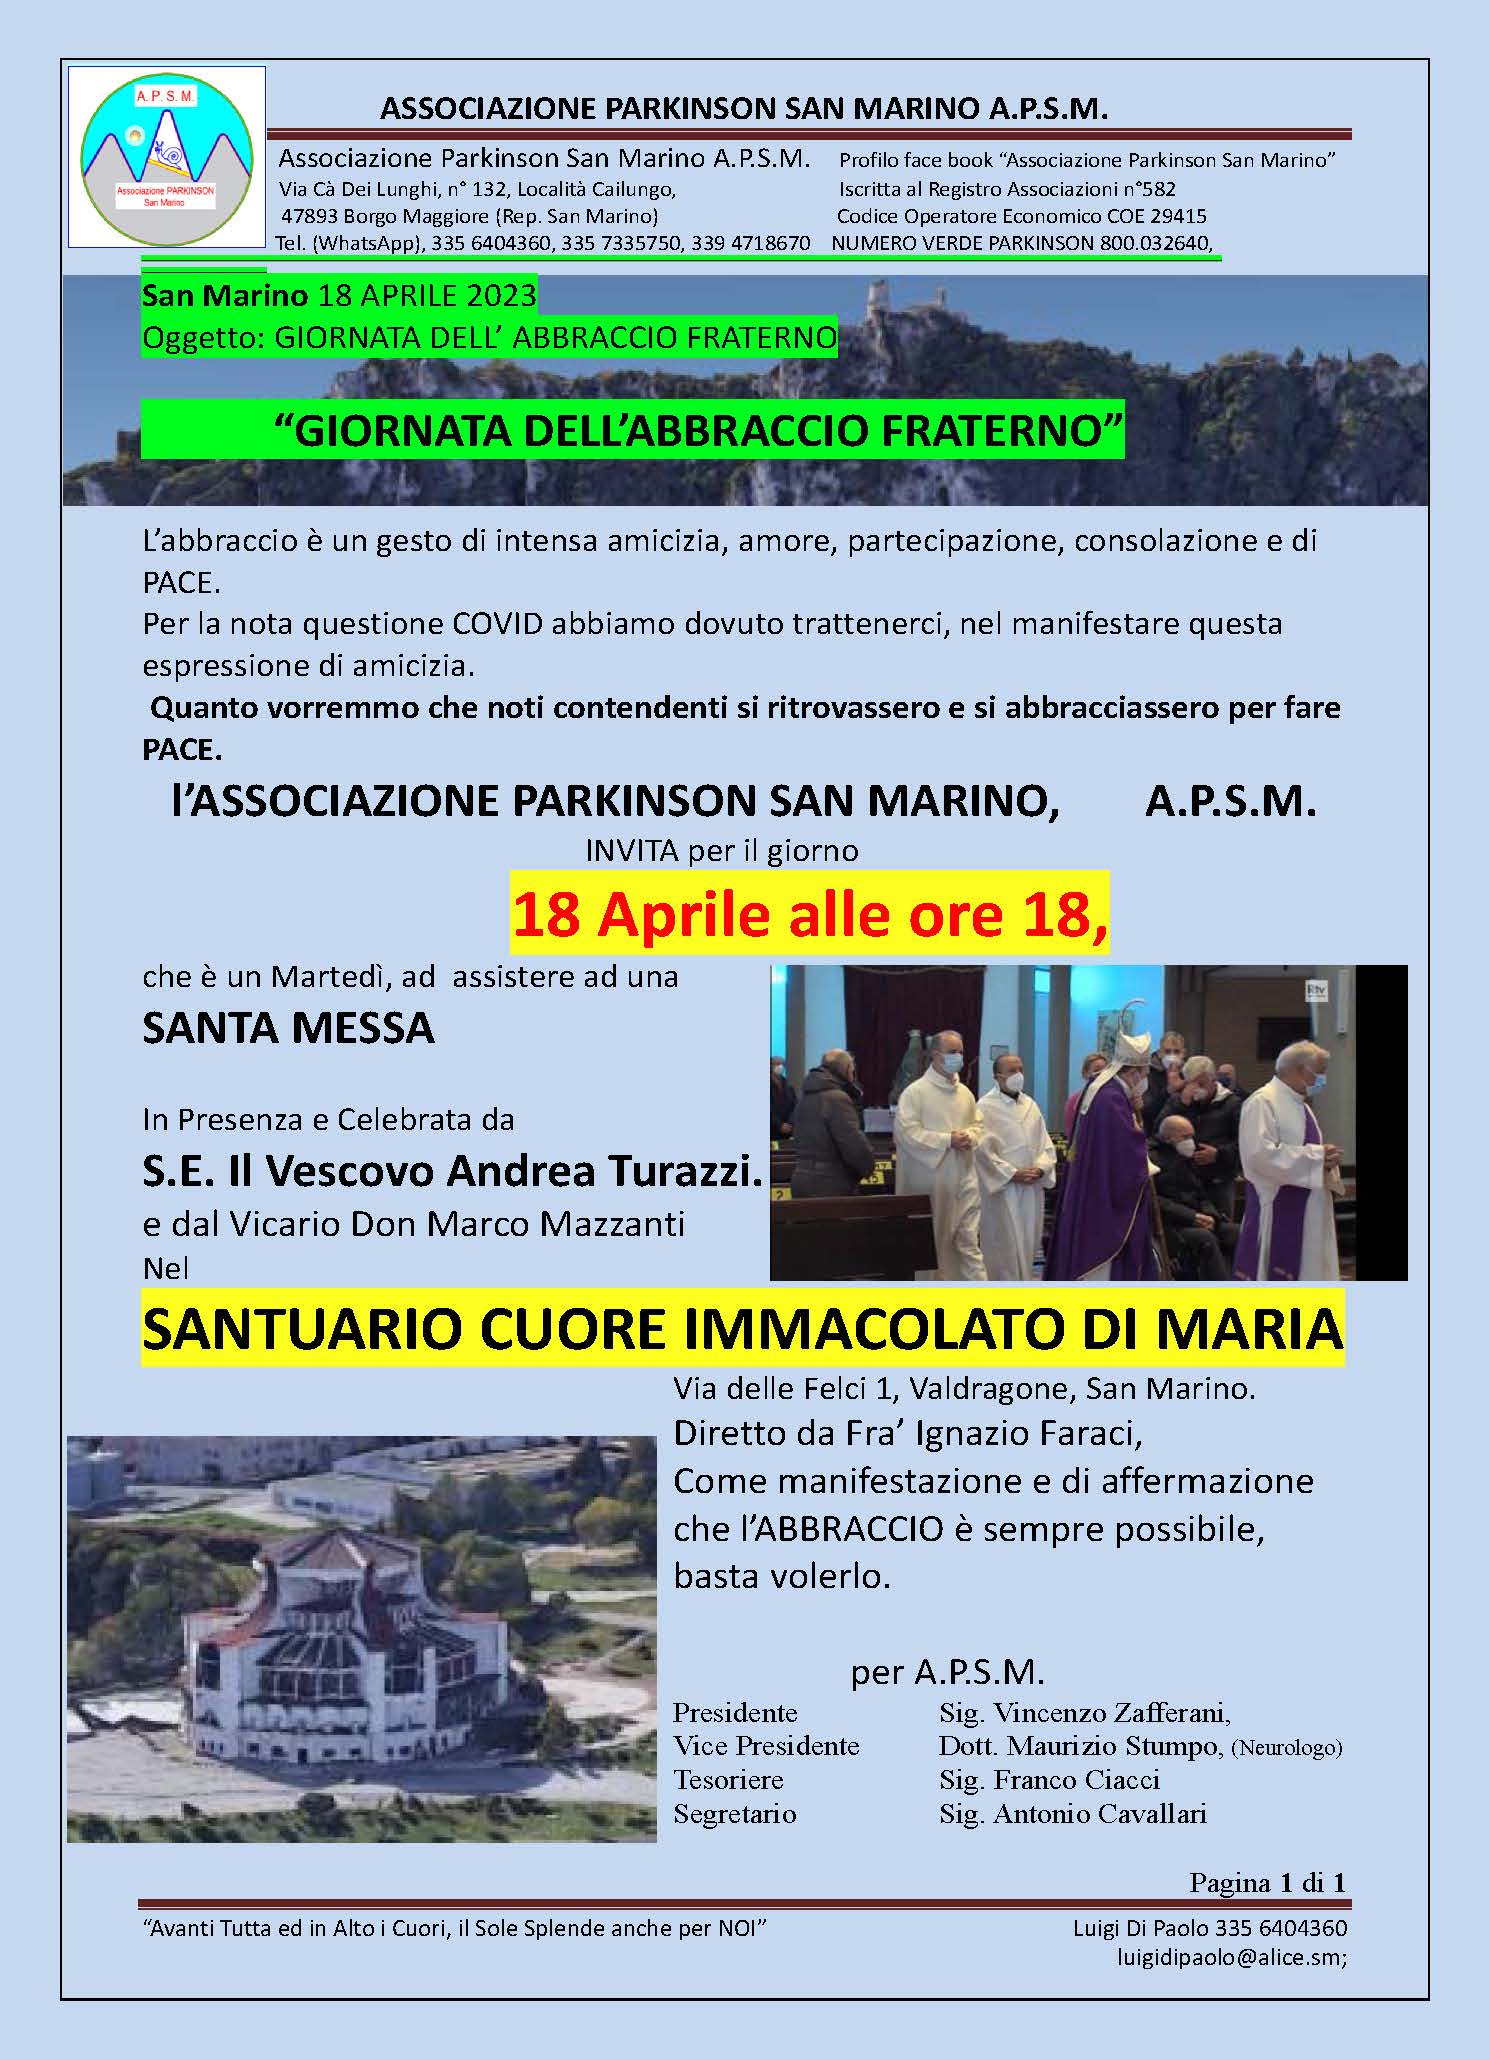 Domani la giornata dell’abbraccio fraterno promossa dall’associazione Parkinson San Marino